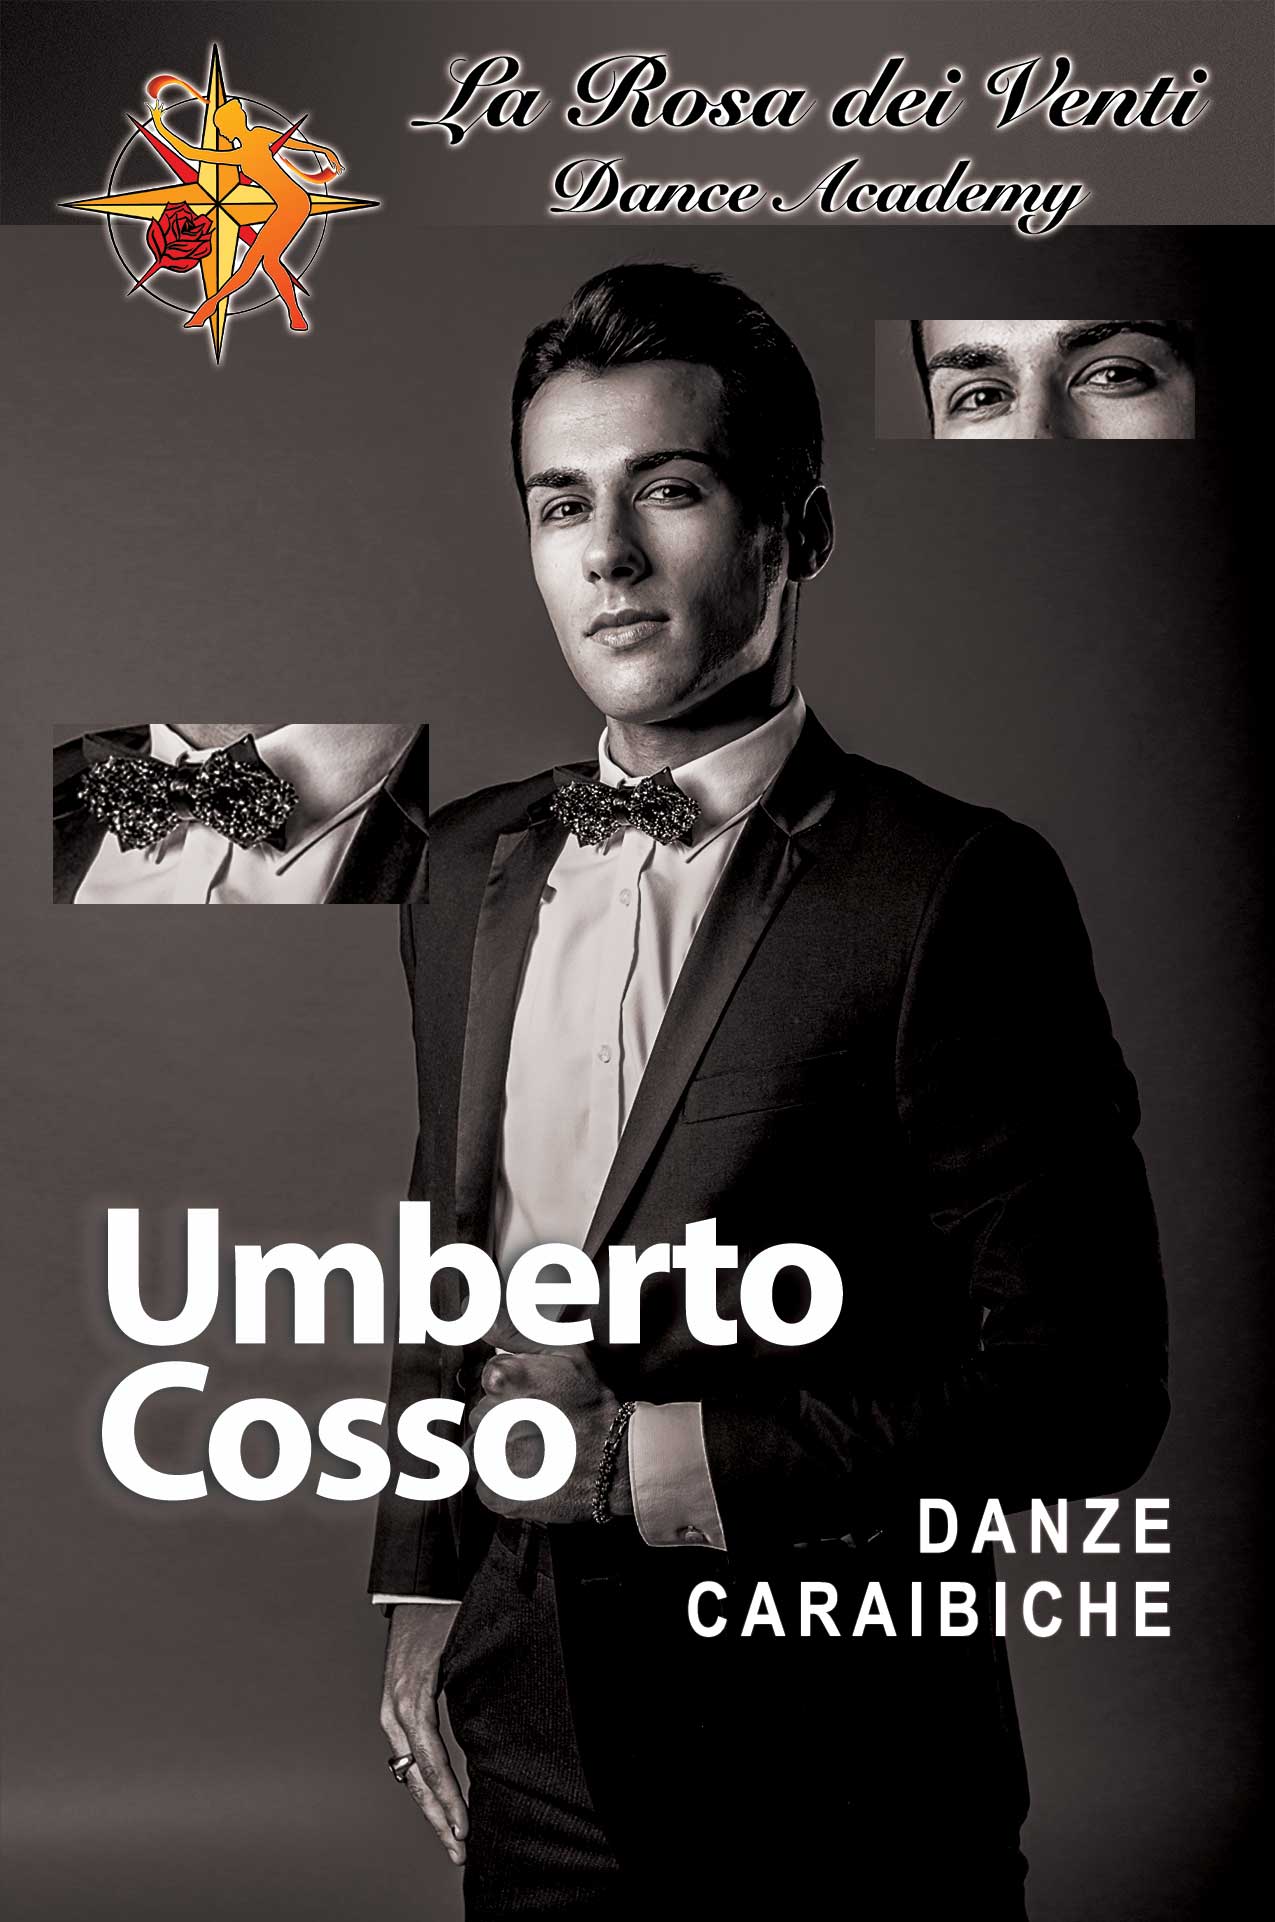 Umberto Cosso Danze Caraibiche La Rosa dei Venti Dance Accademy